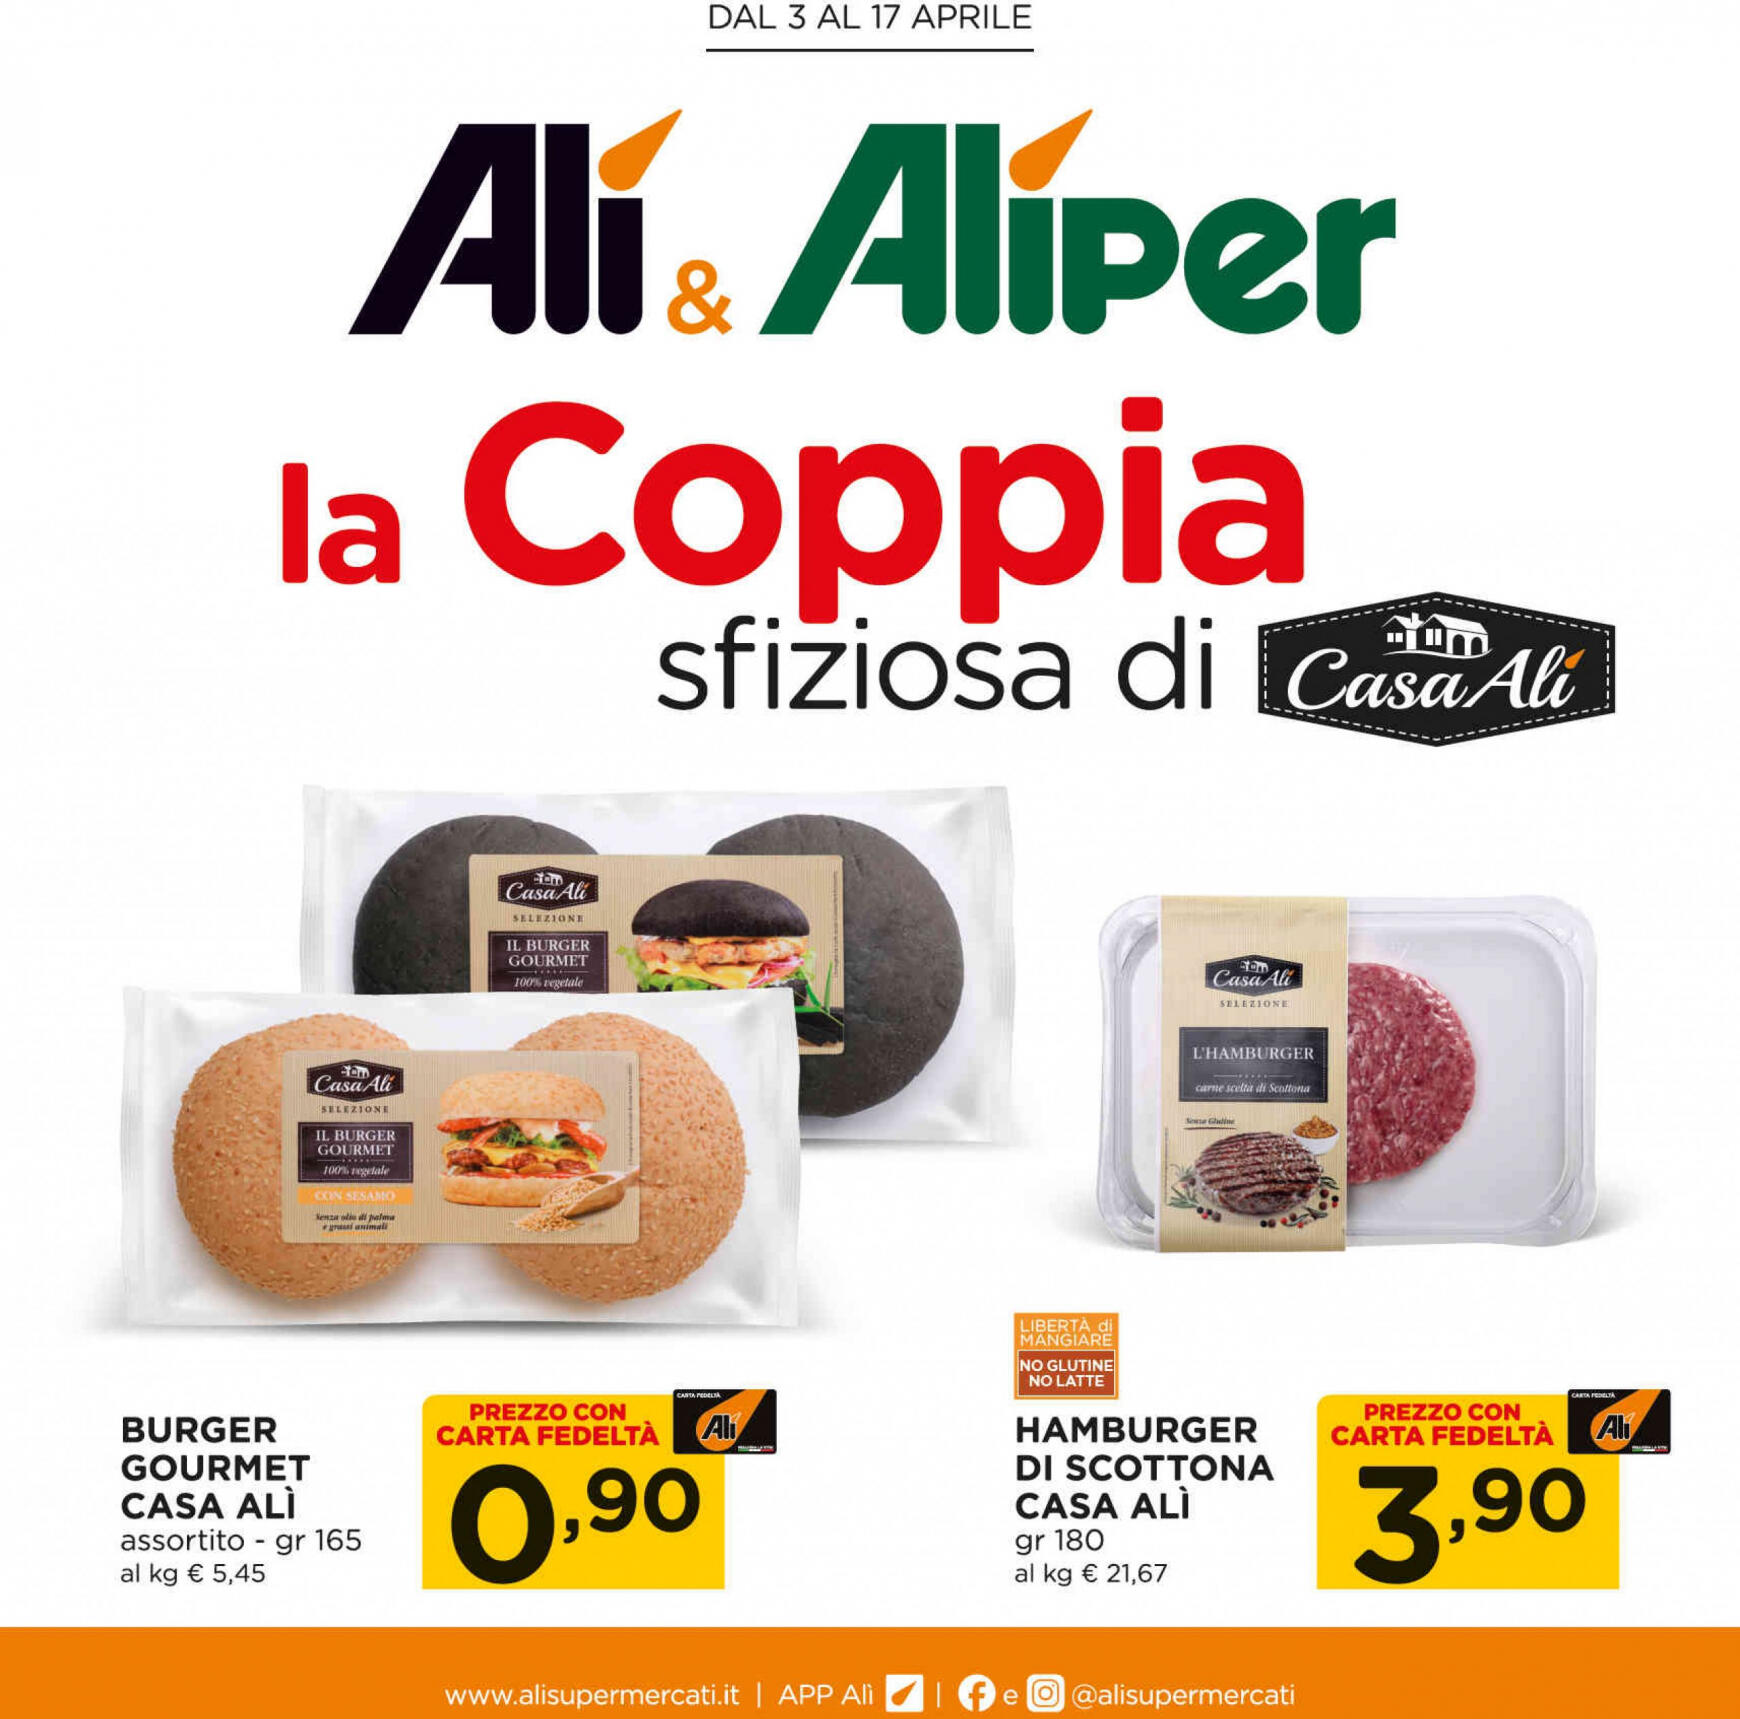 ali-aliper - Nuovo volantino Ali - Aliper - Coppie online 03.04. - 17.04. - page: 1